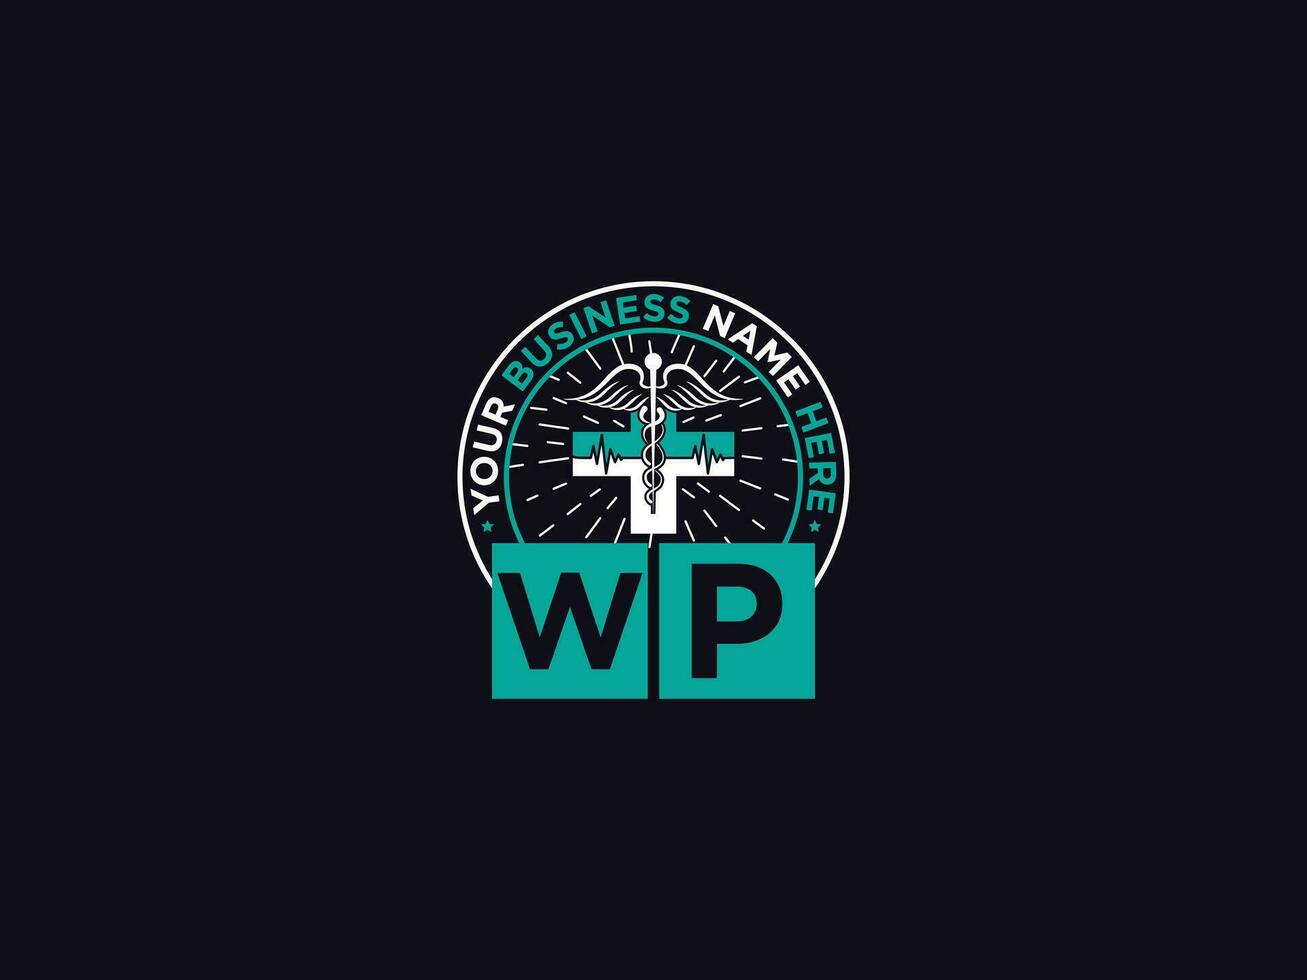 medizinisch wp Logo Kunst, Initiale wp pw klinisch Logo Brief Design vektor